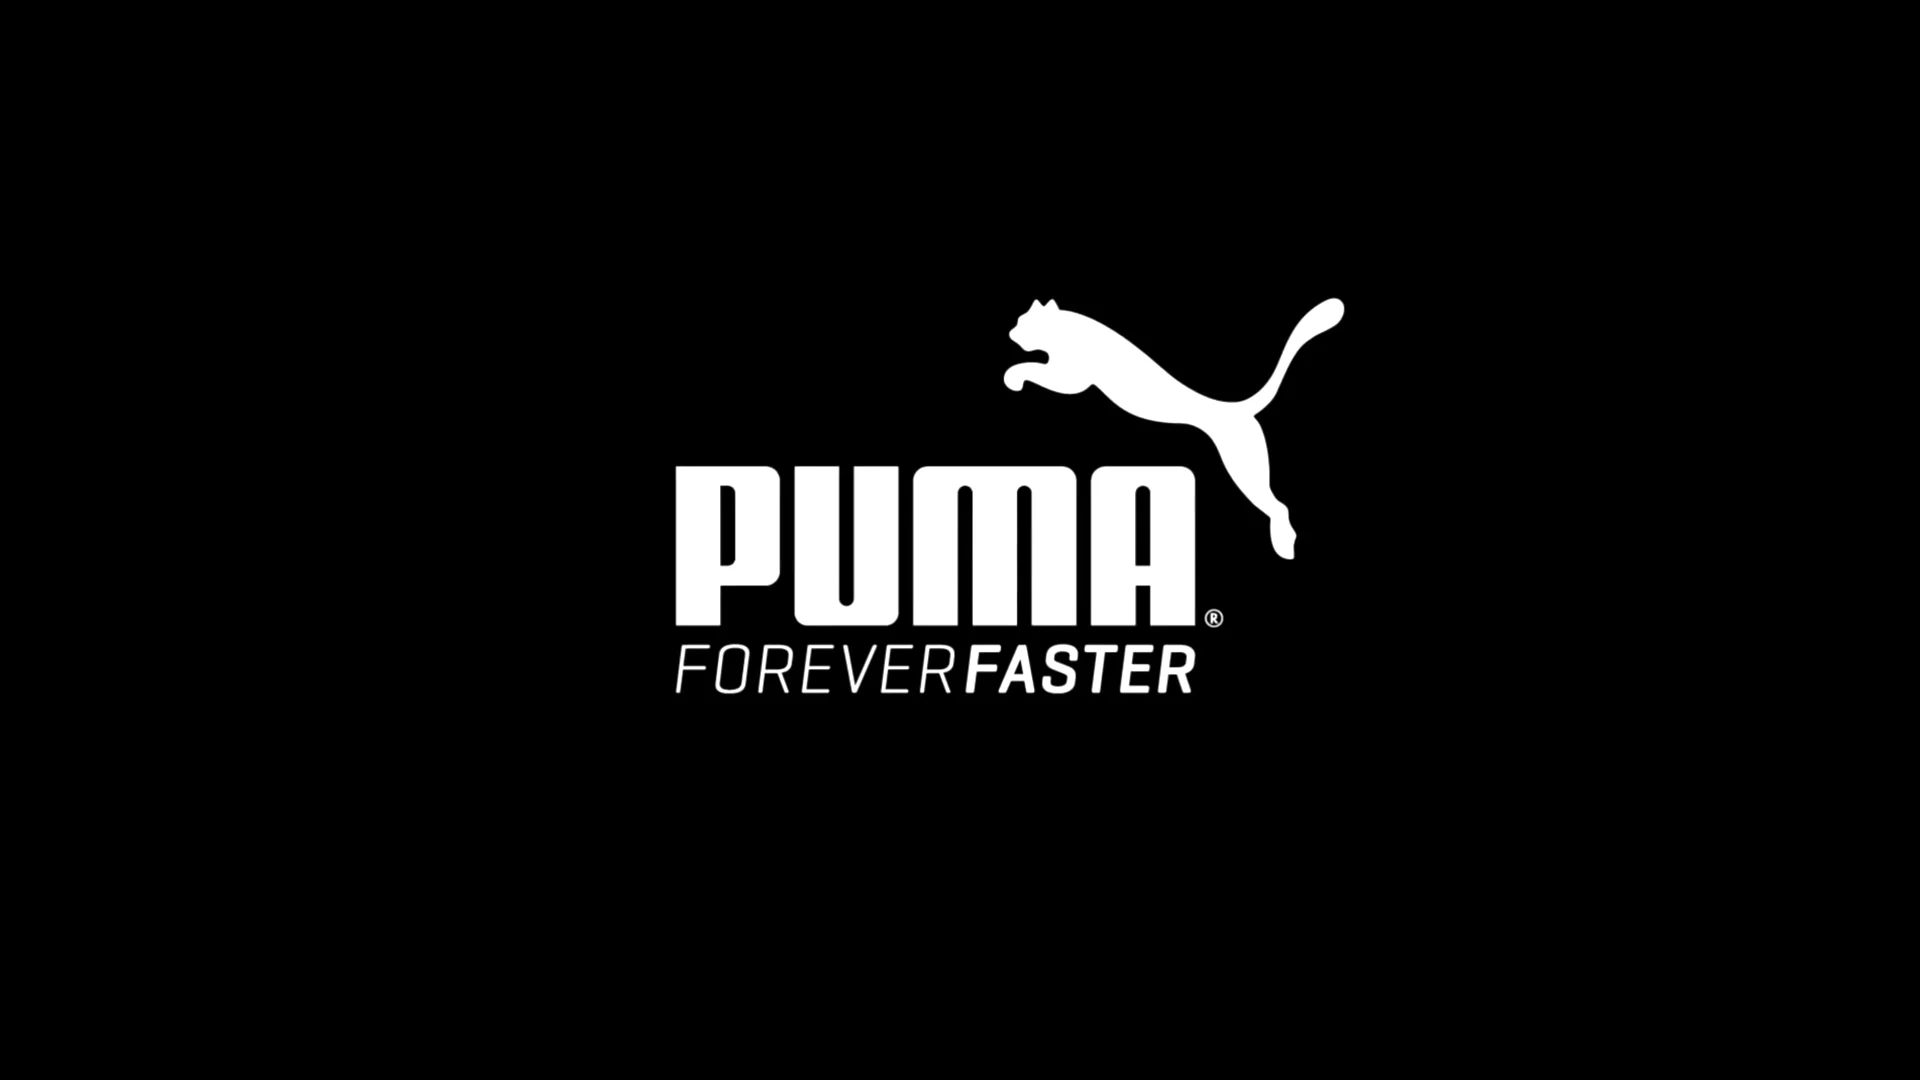 PUMA.com  Forever Faster.